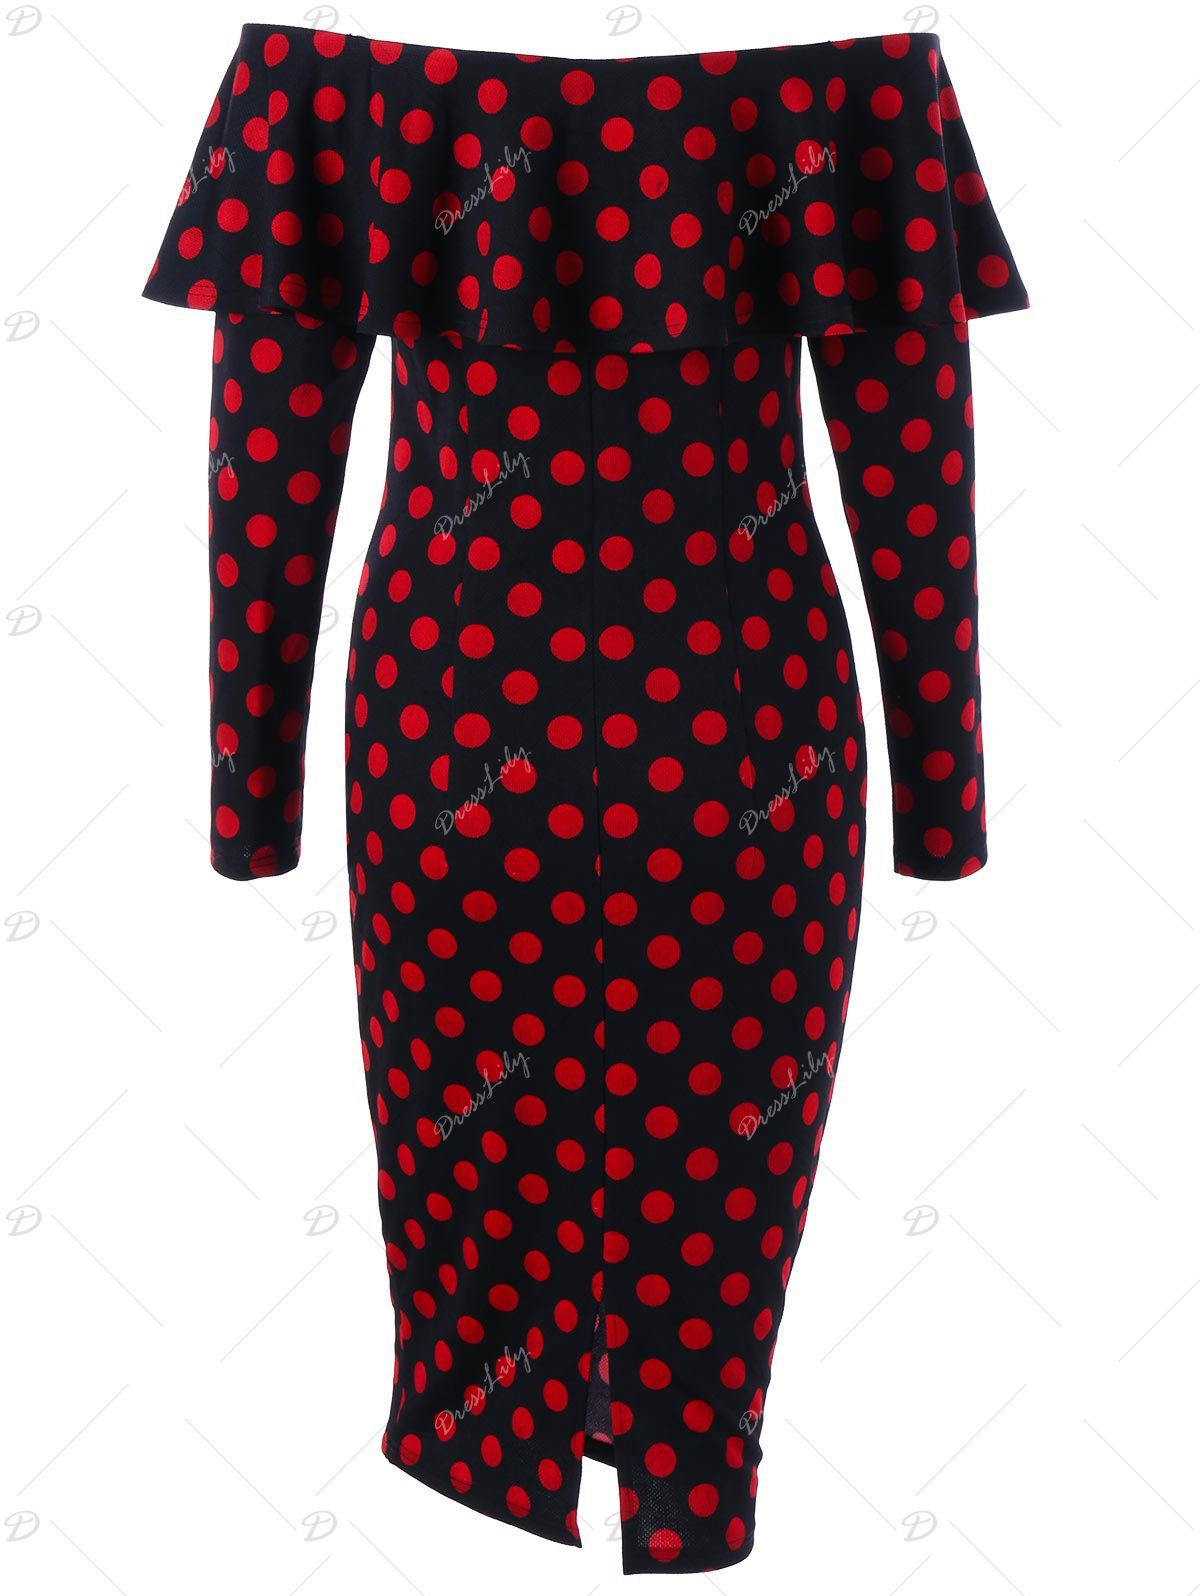 Overlay Polka Dot Off The Shoulder Dress - RED/BLACK L